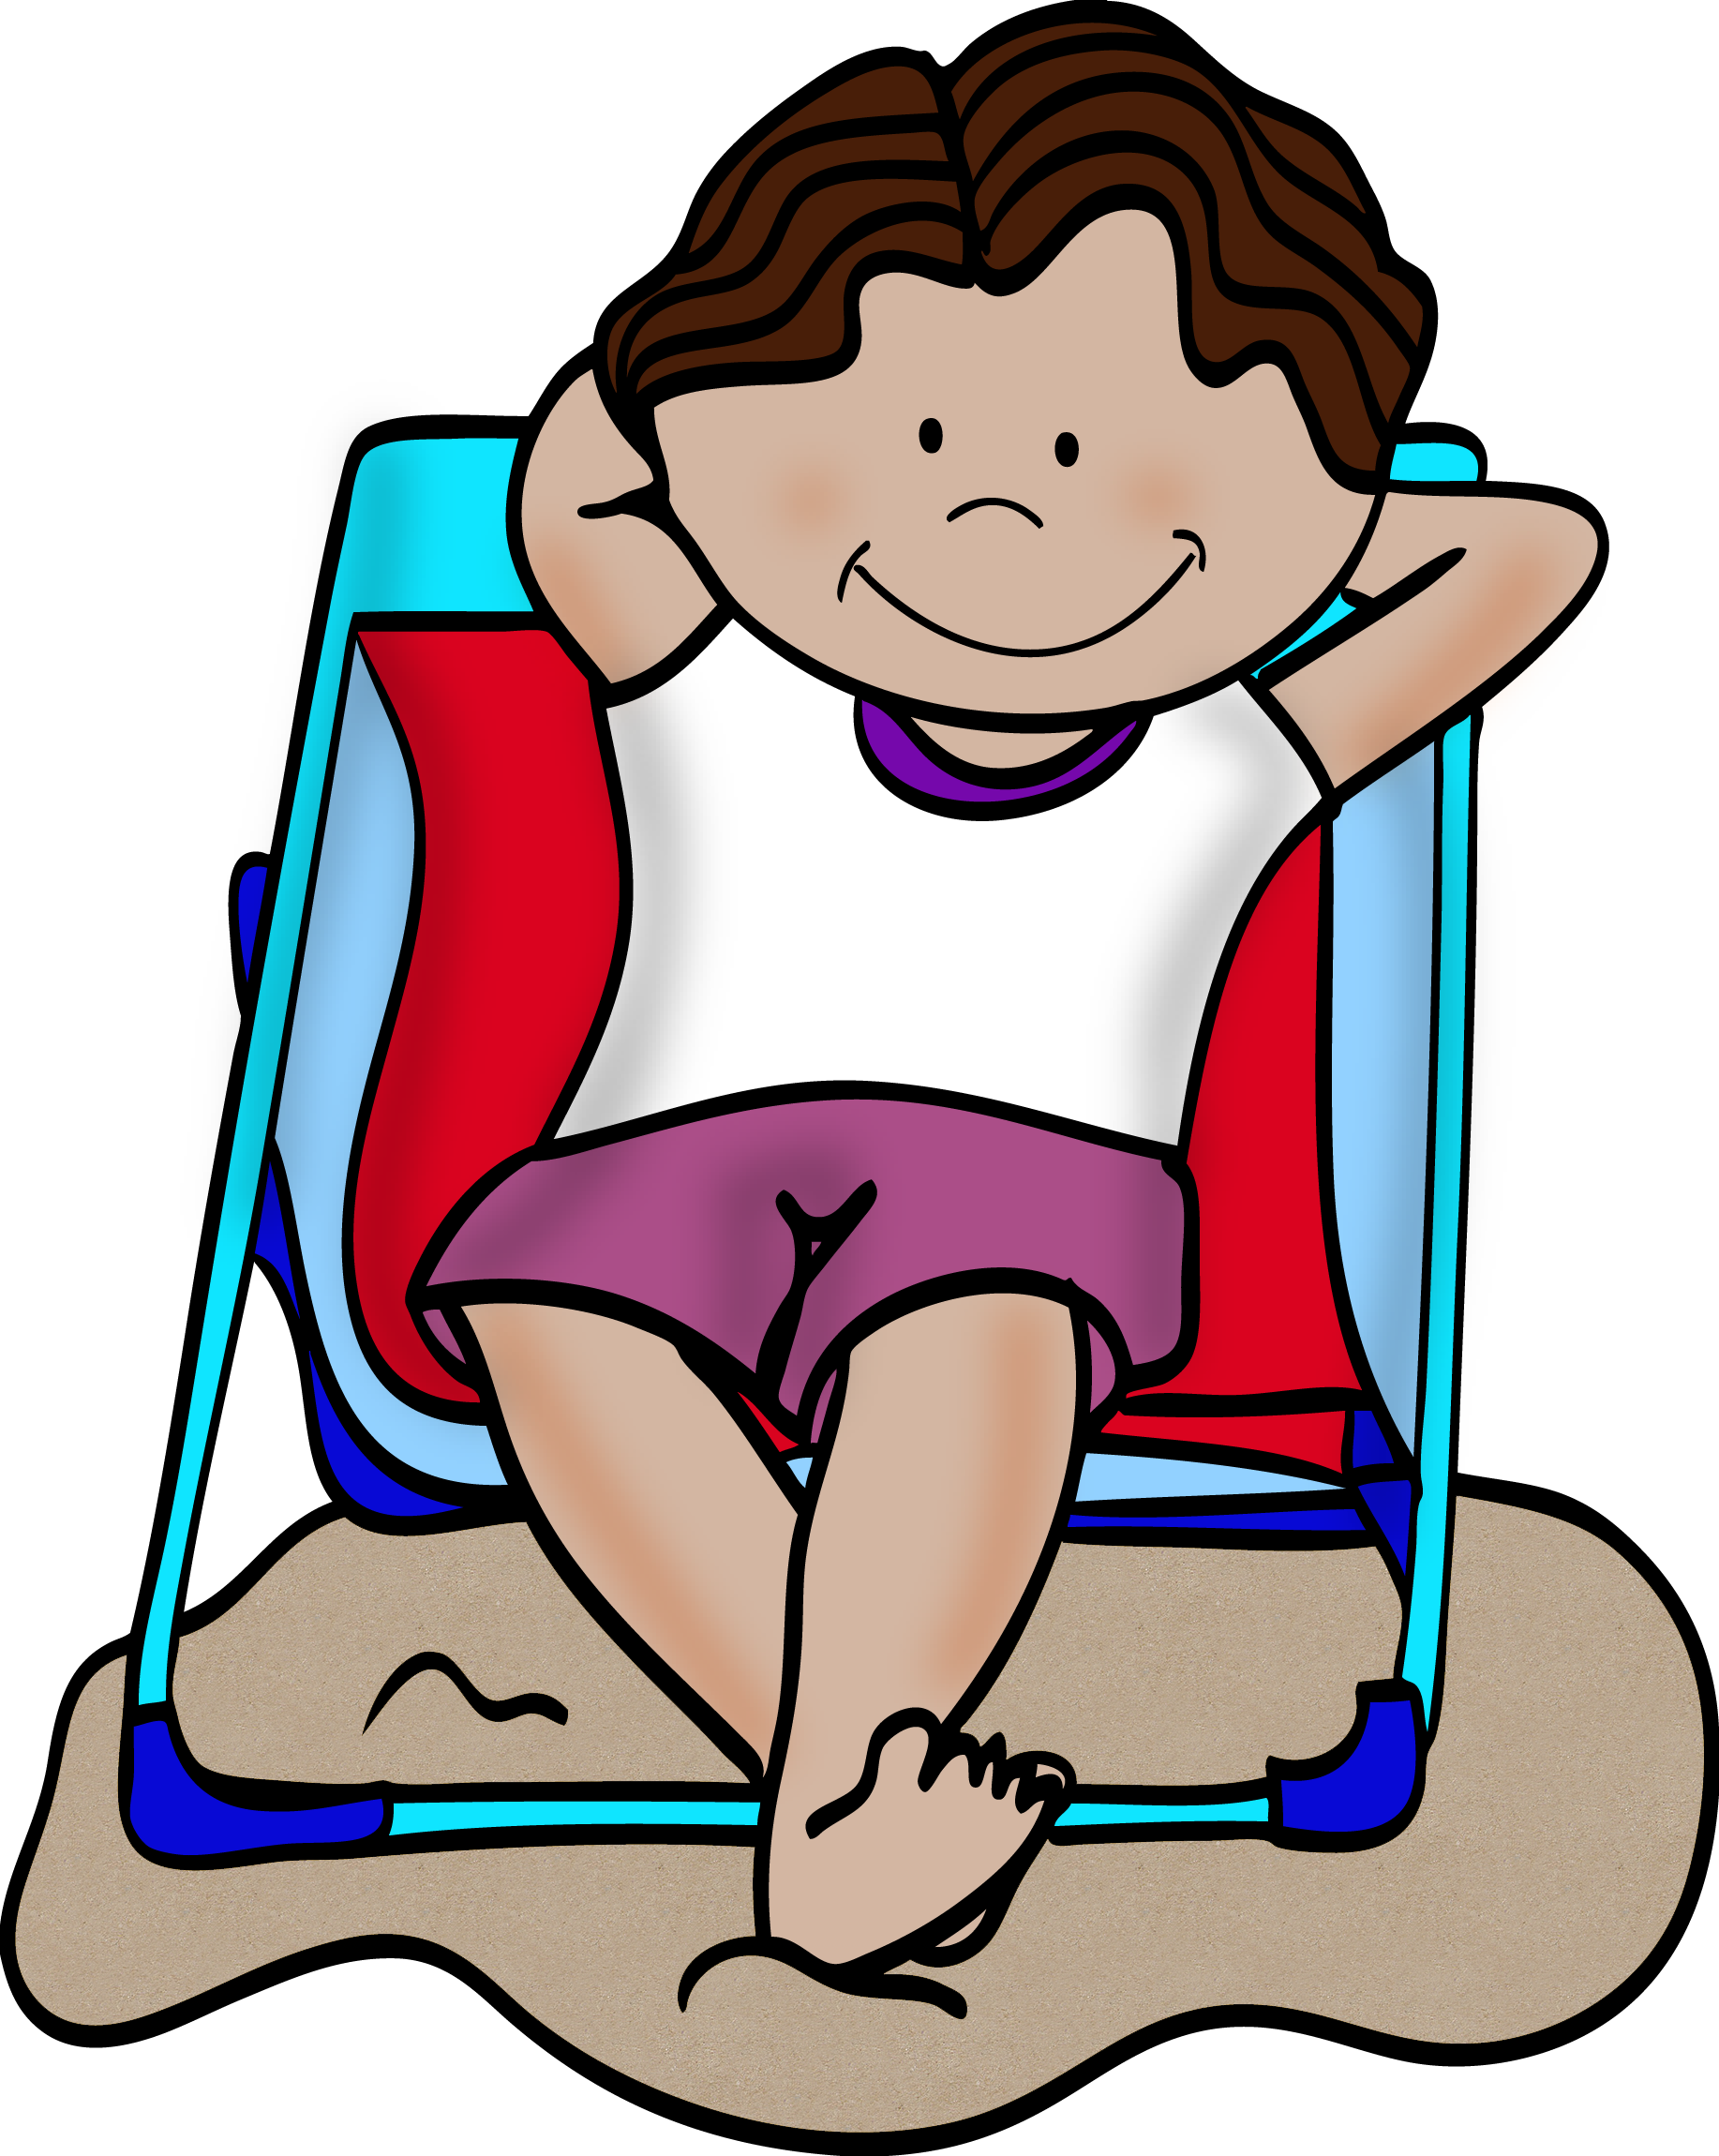 A Cartoon Of A Girl Sitting In A Beach Chair